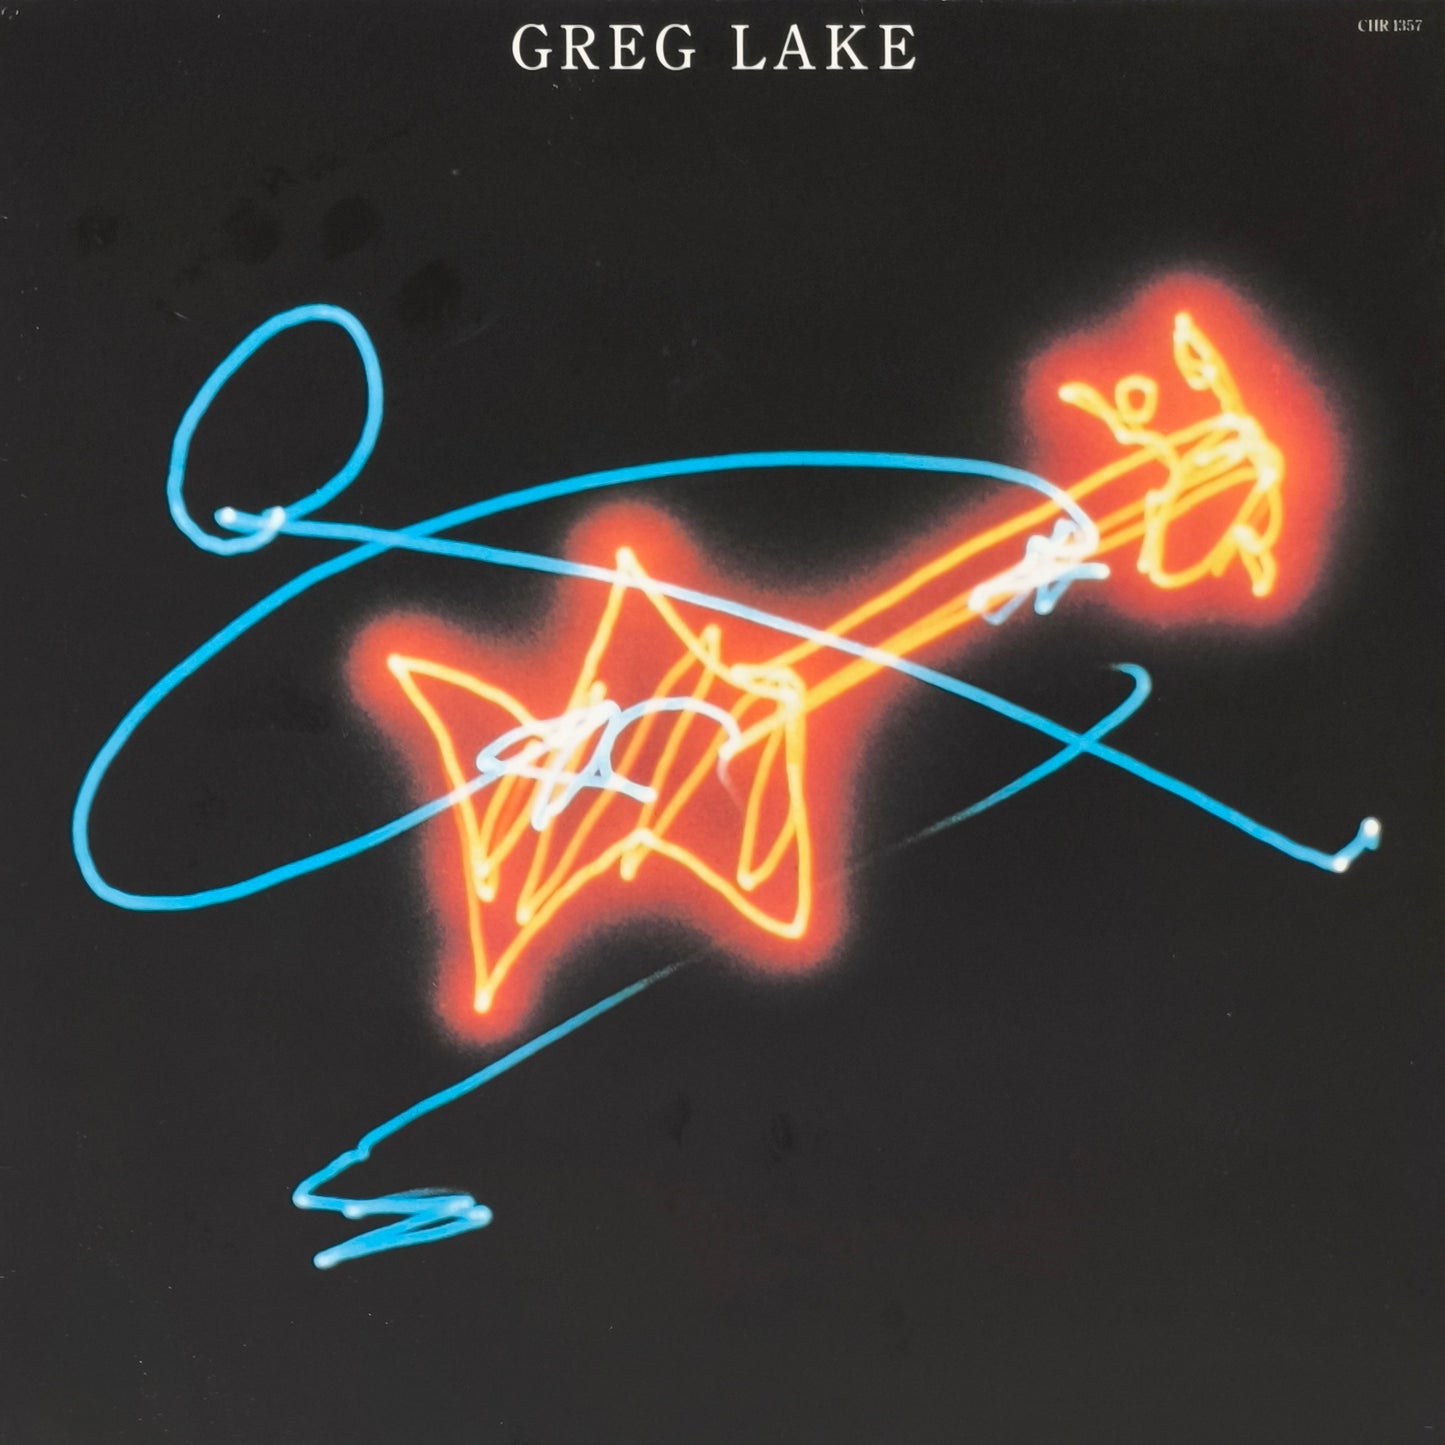 GREG LAKE - Greg Lake